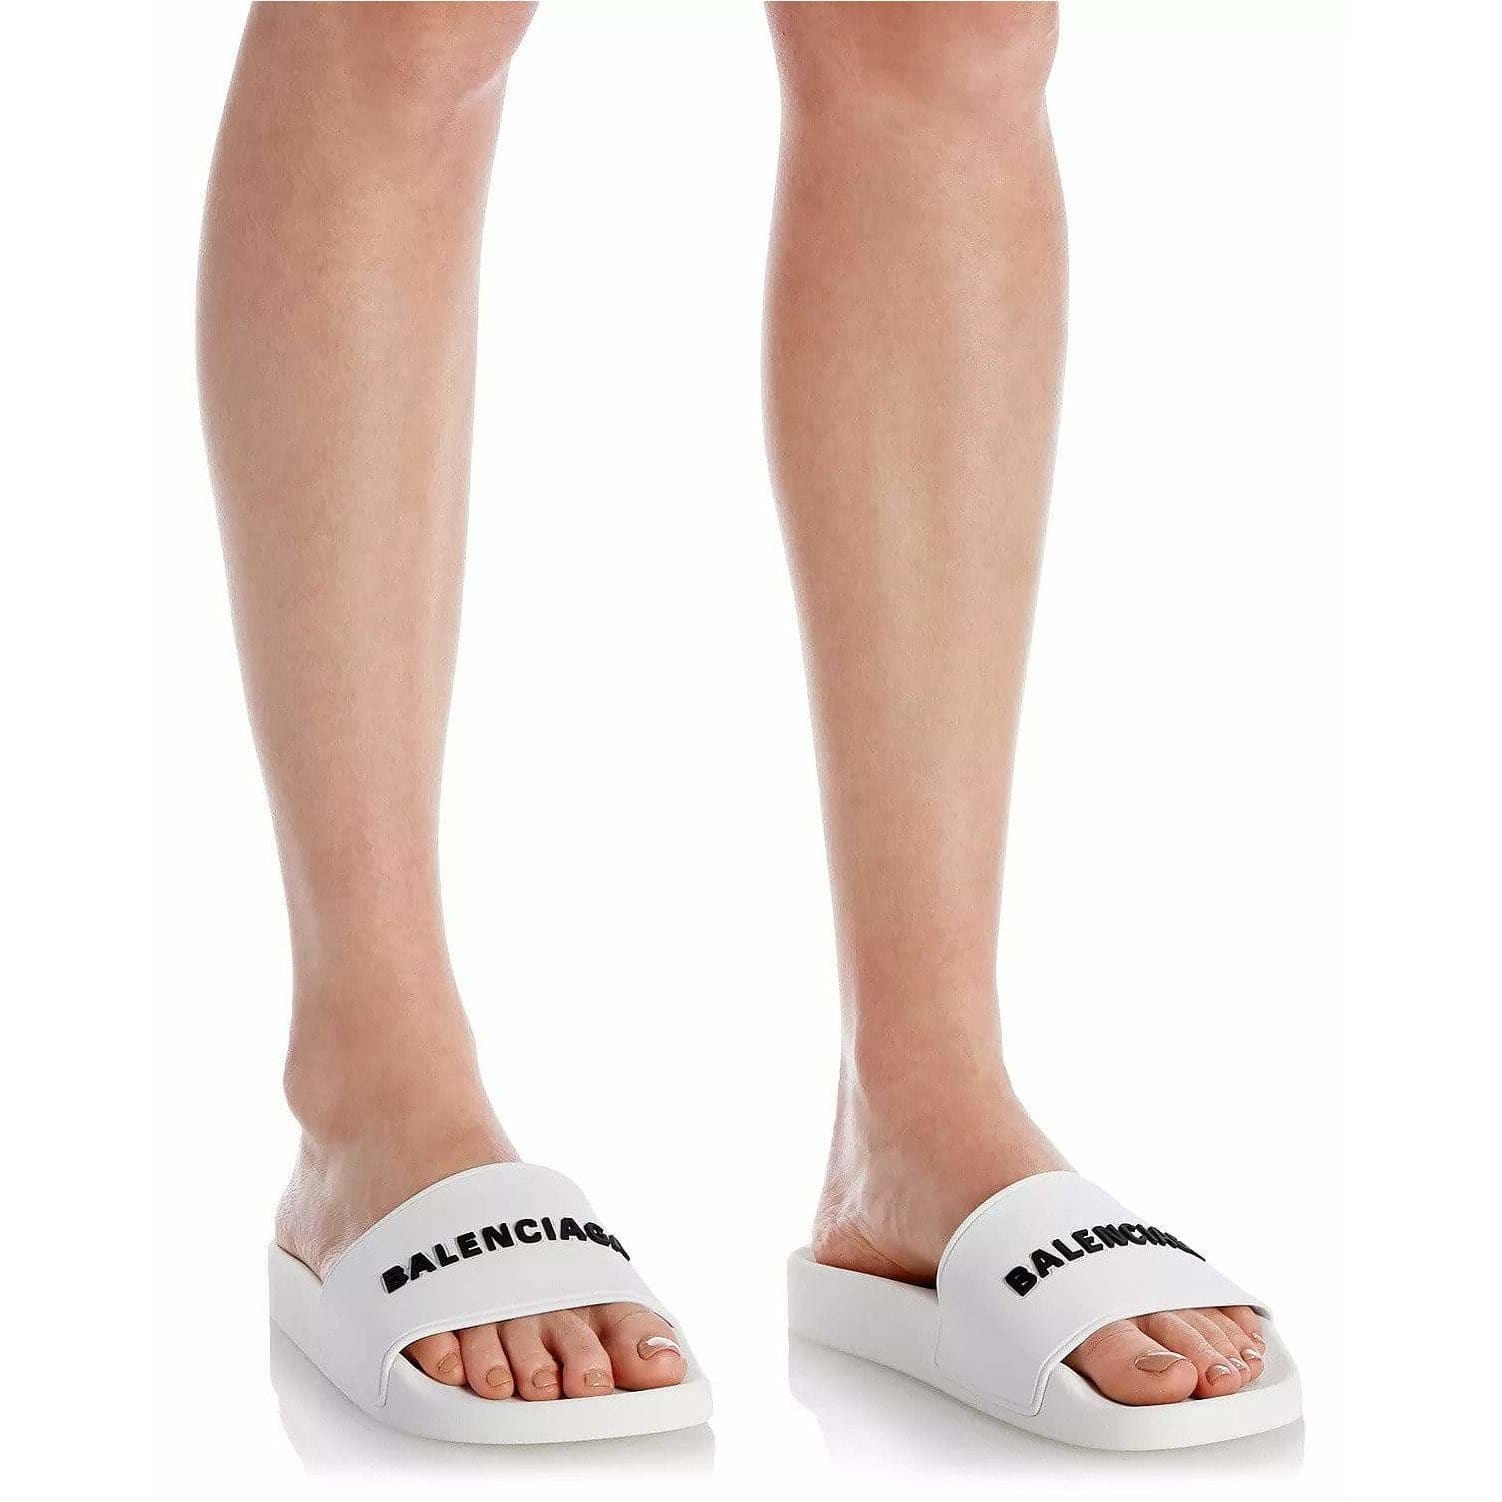 Foot Ideals Ph  Balenciaga Track sandals 39500  Facebook